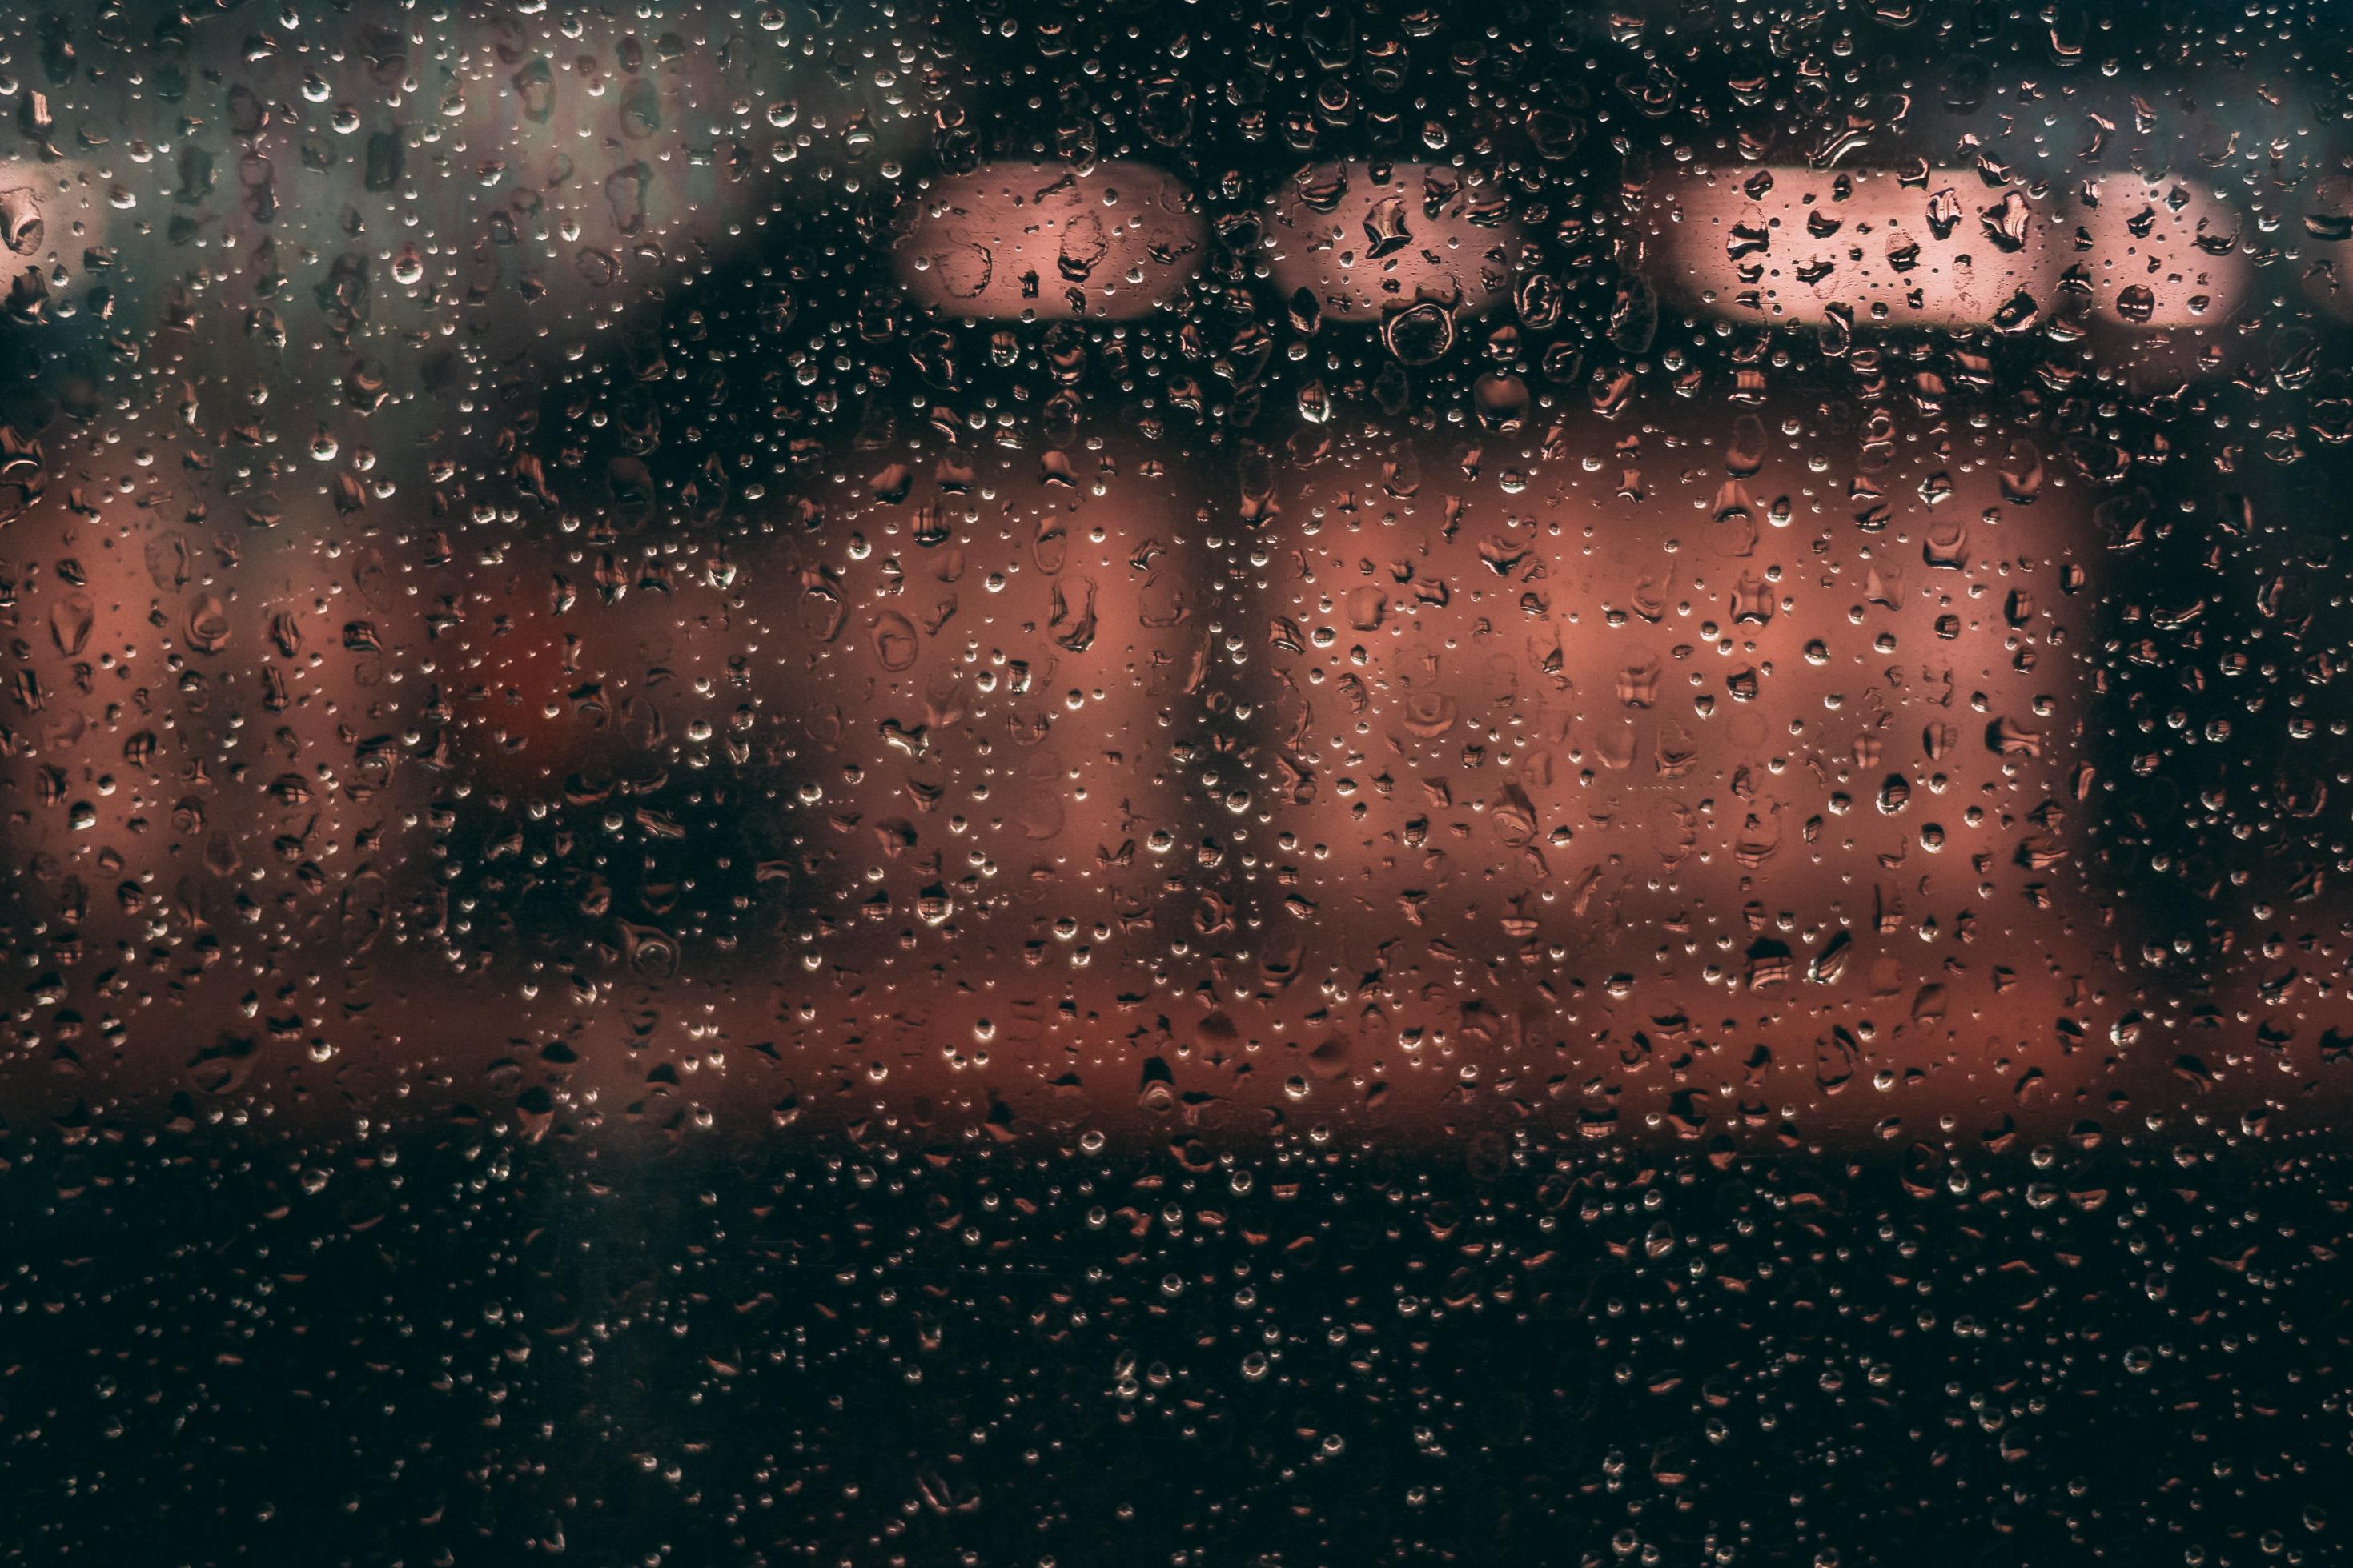 Durch eine mit Regentropfen übersäte Fensterscheibe sind unscharf die rötlichen Lichter zu erkennen, die auf einem nahen Gebäude scheinen. das Bild vermittelt das Gefühl von Isoliertheit und Abgeschiedenheit.